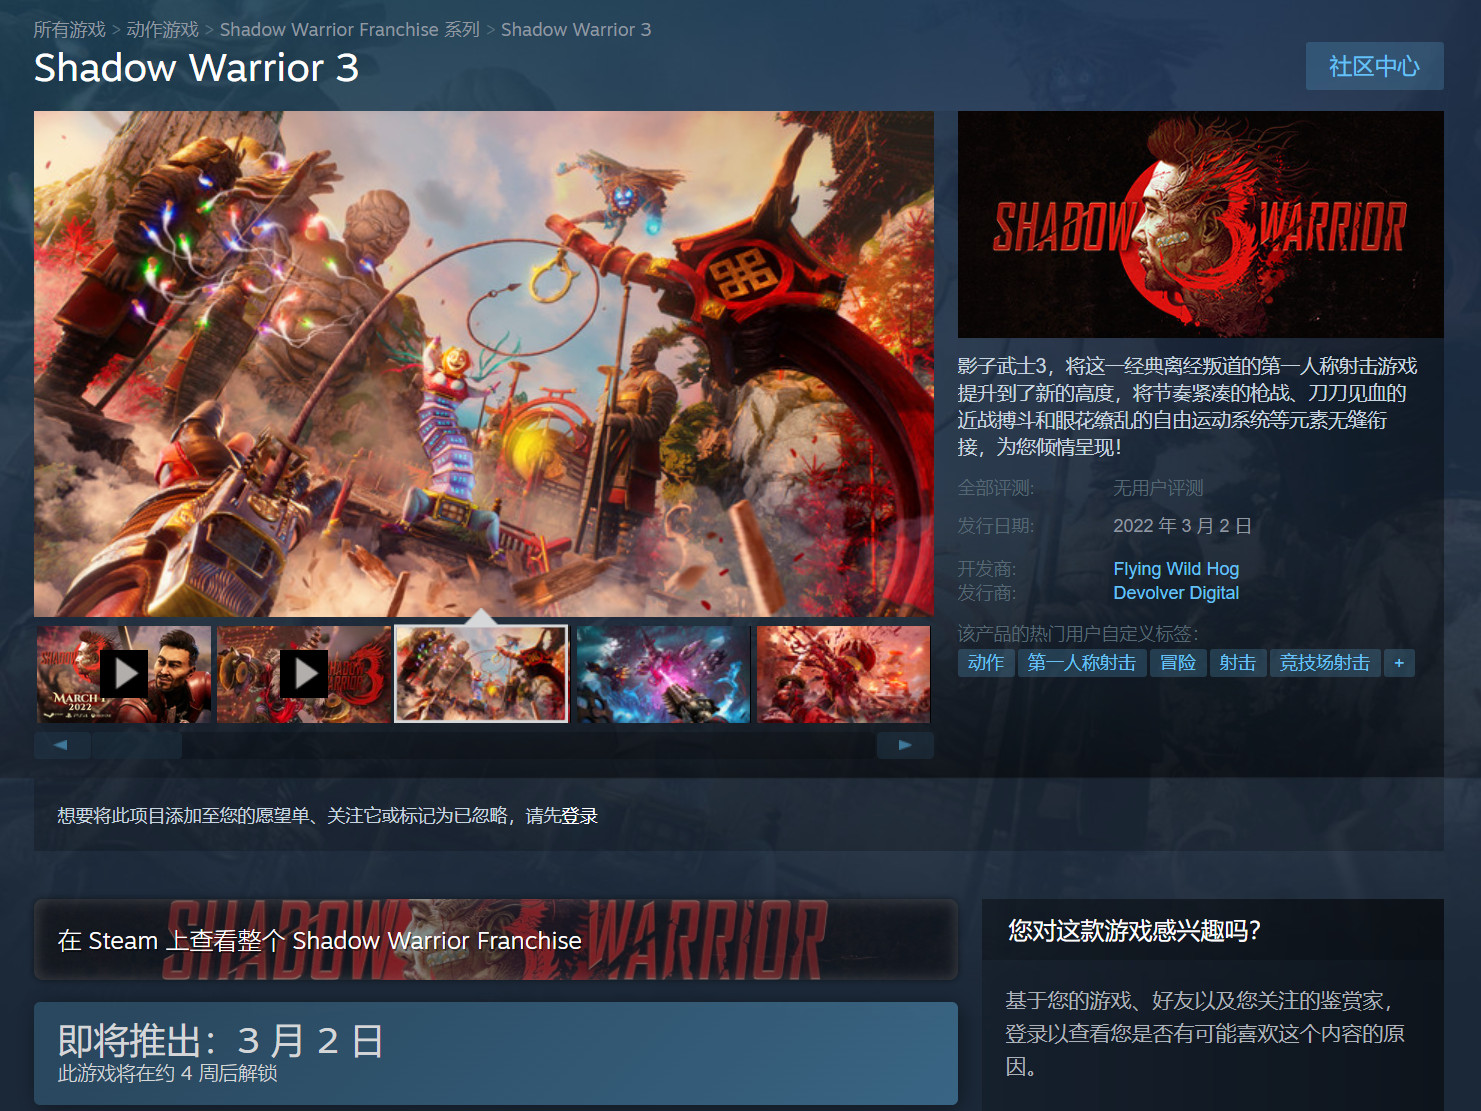 《影子武士3》在Steam开启预购 标准版188元